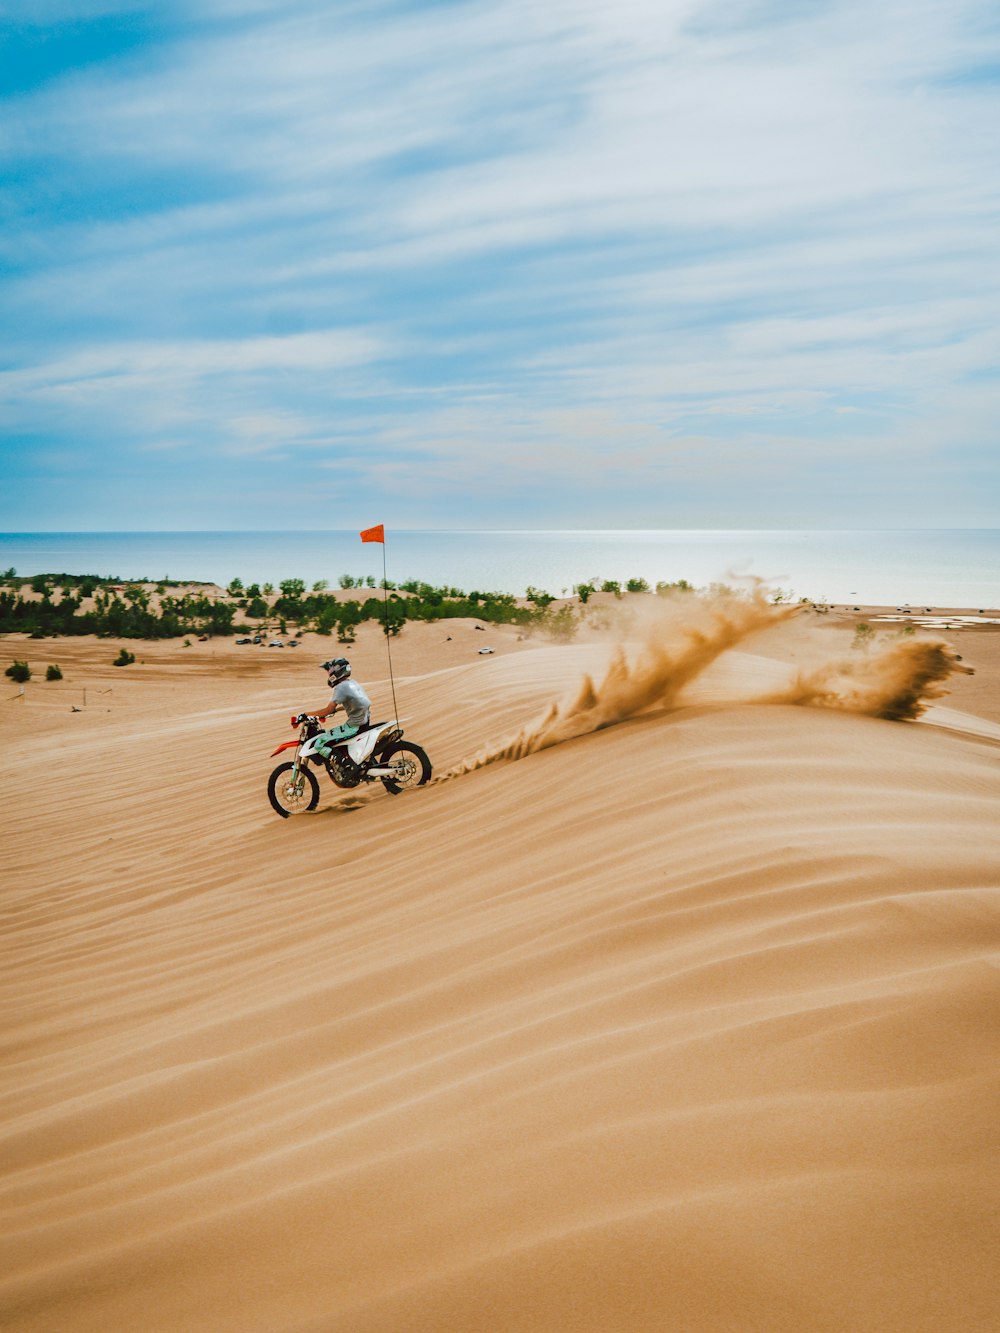 homem que monta a motocicleta na areia marrom durante o dia